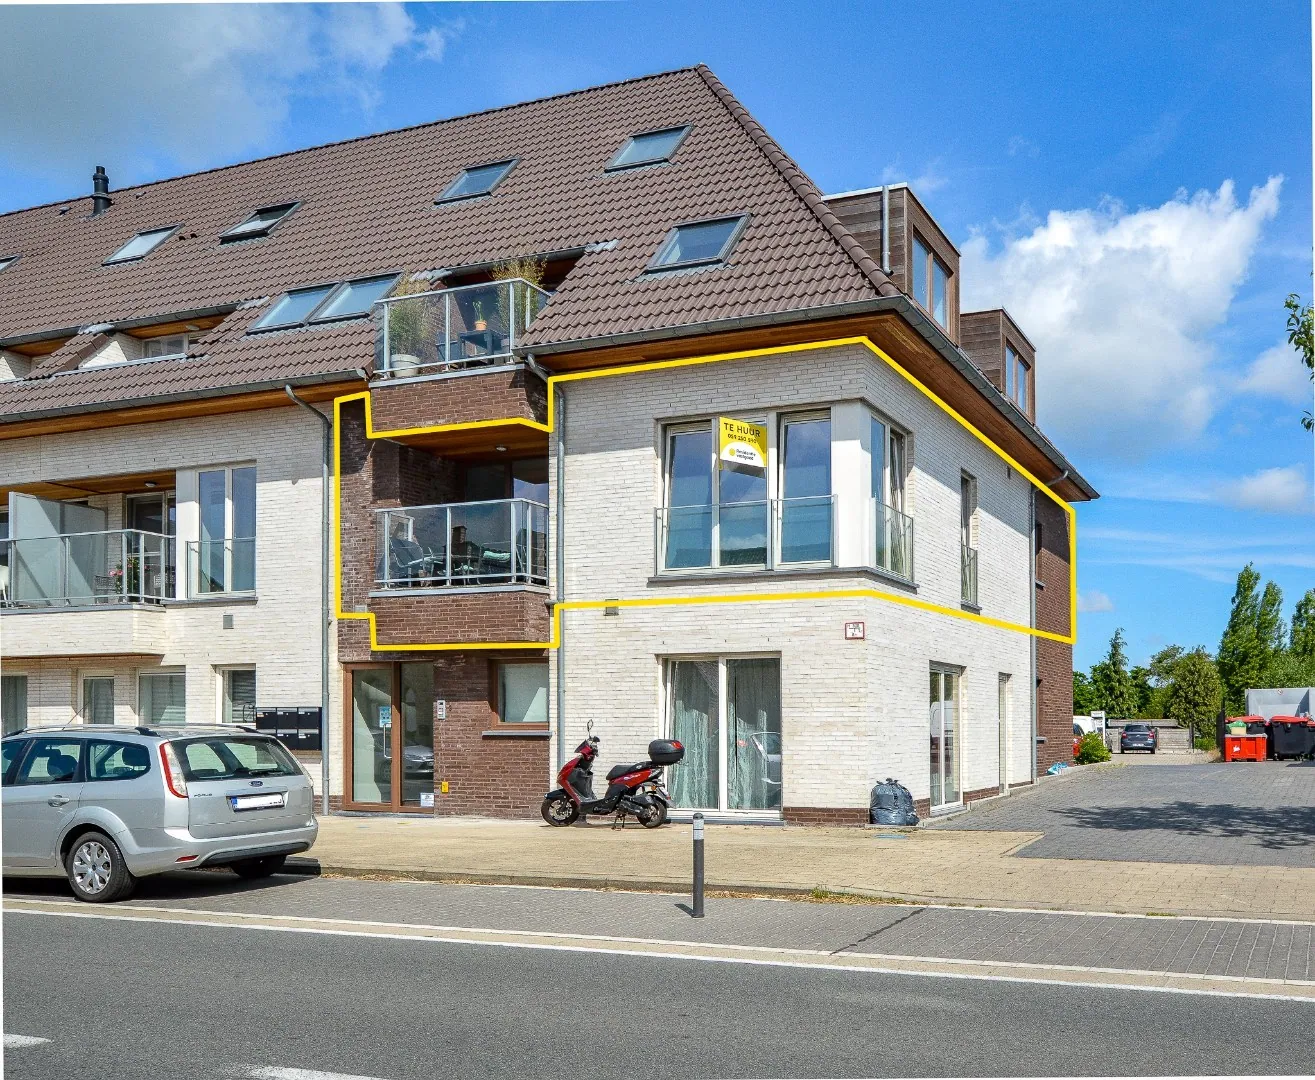 Recent appartement met autostaanplaats in het centrum van Westkerke